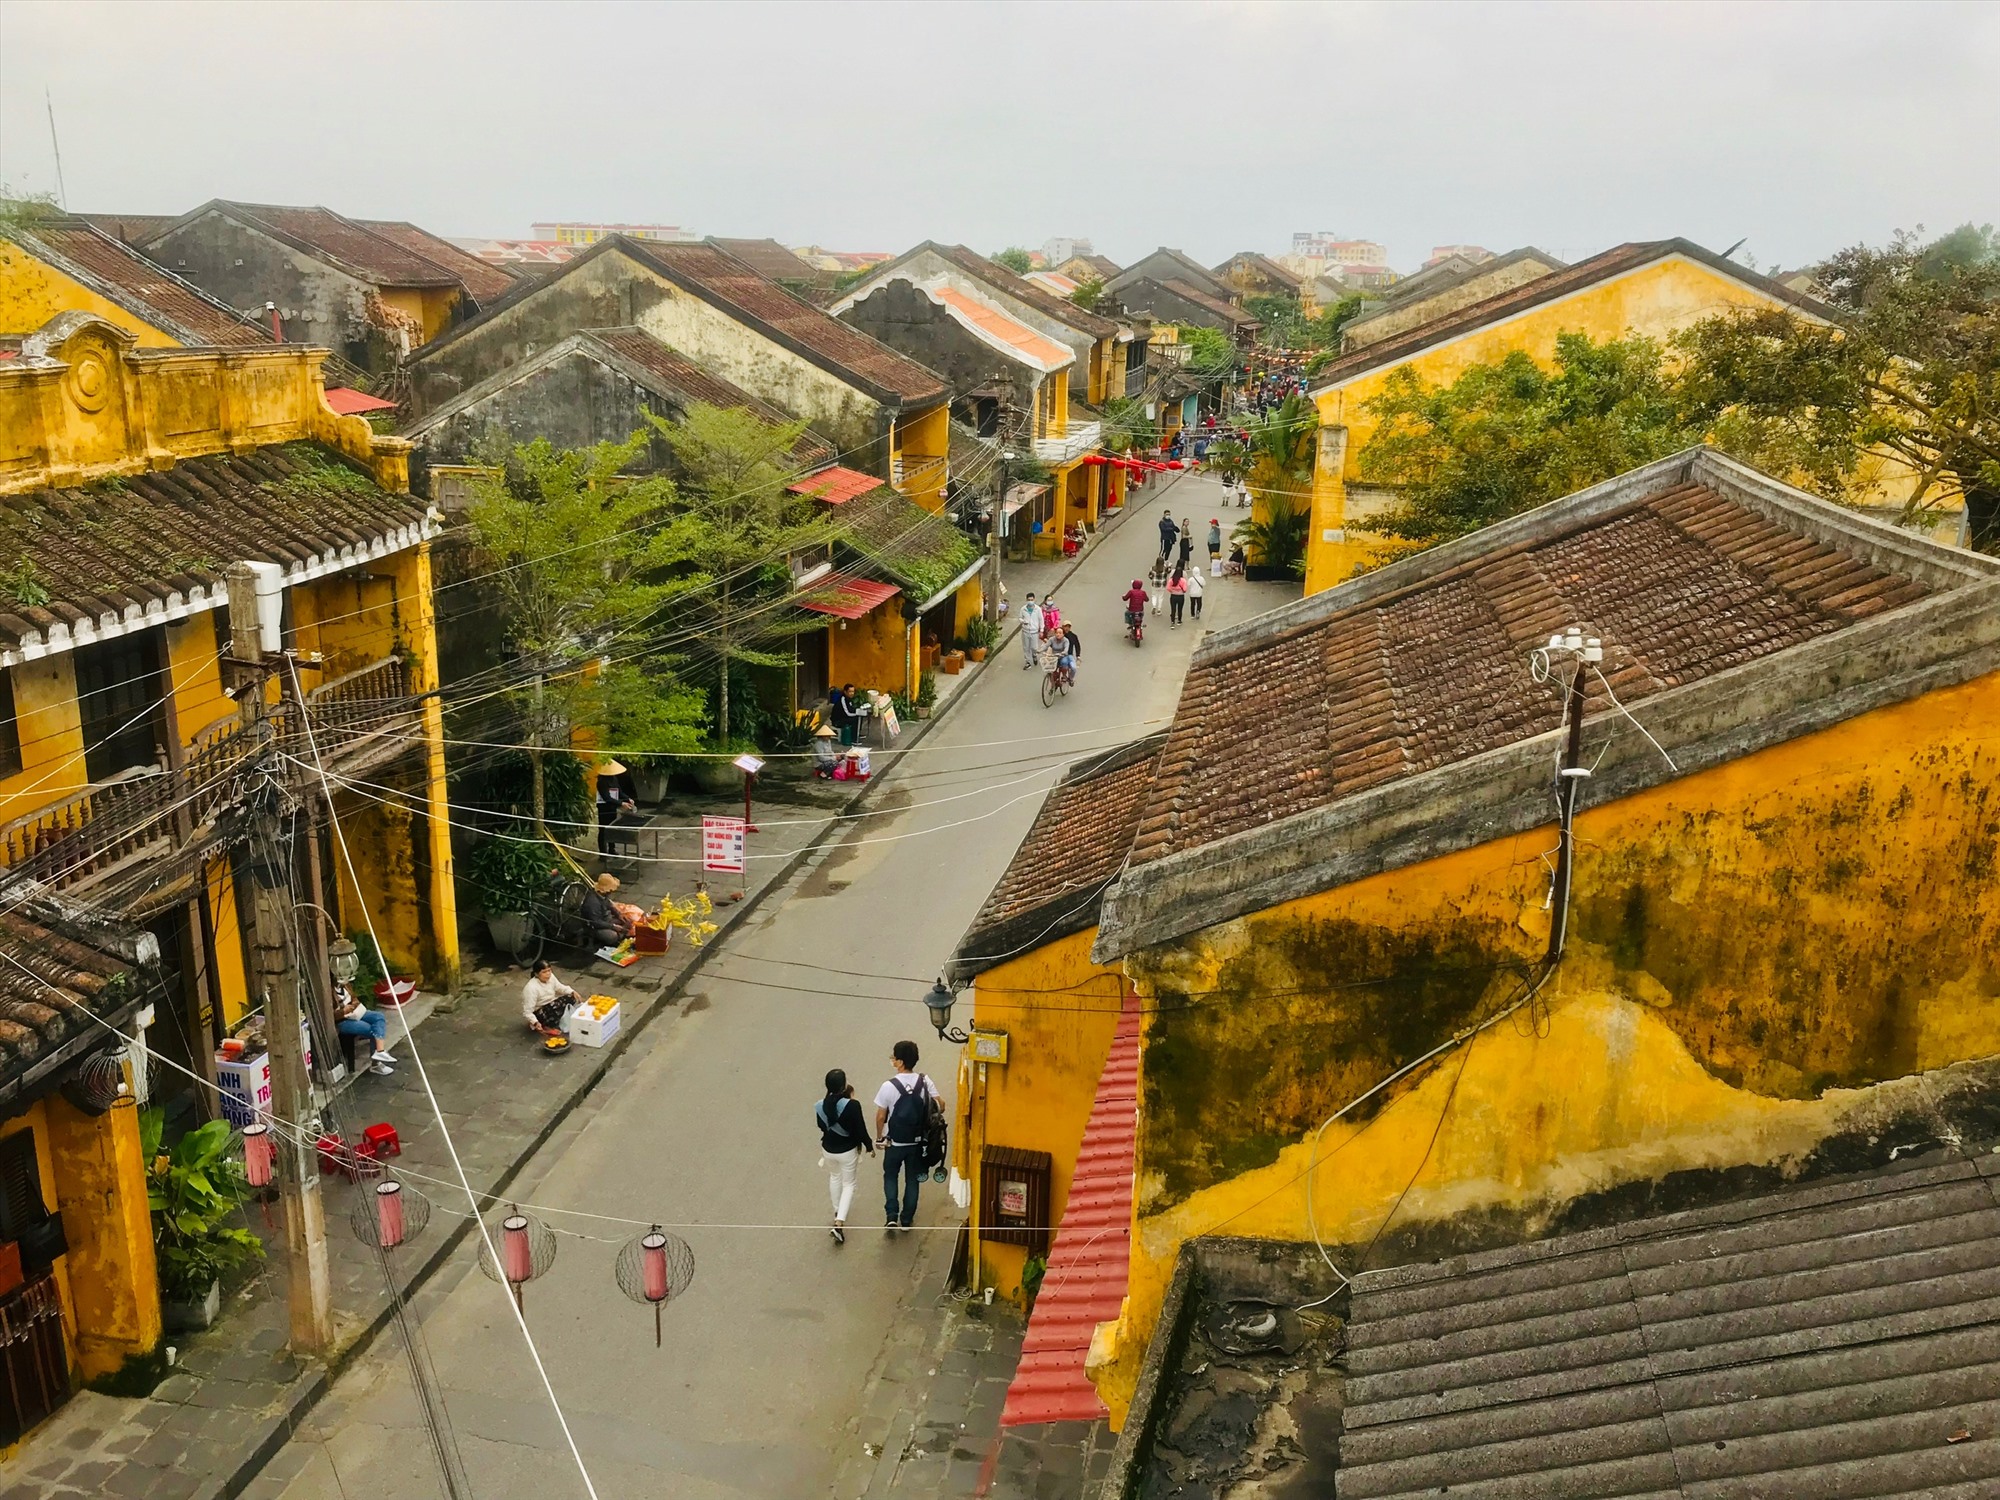 phố cổ Hội An ở Việt Nam - shophouse là gì